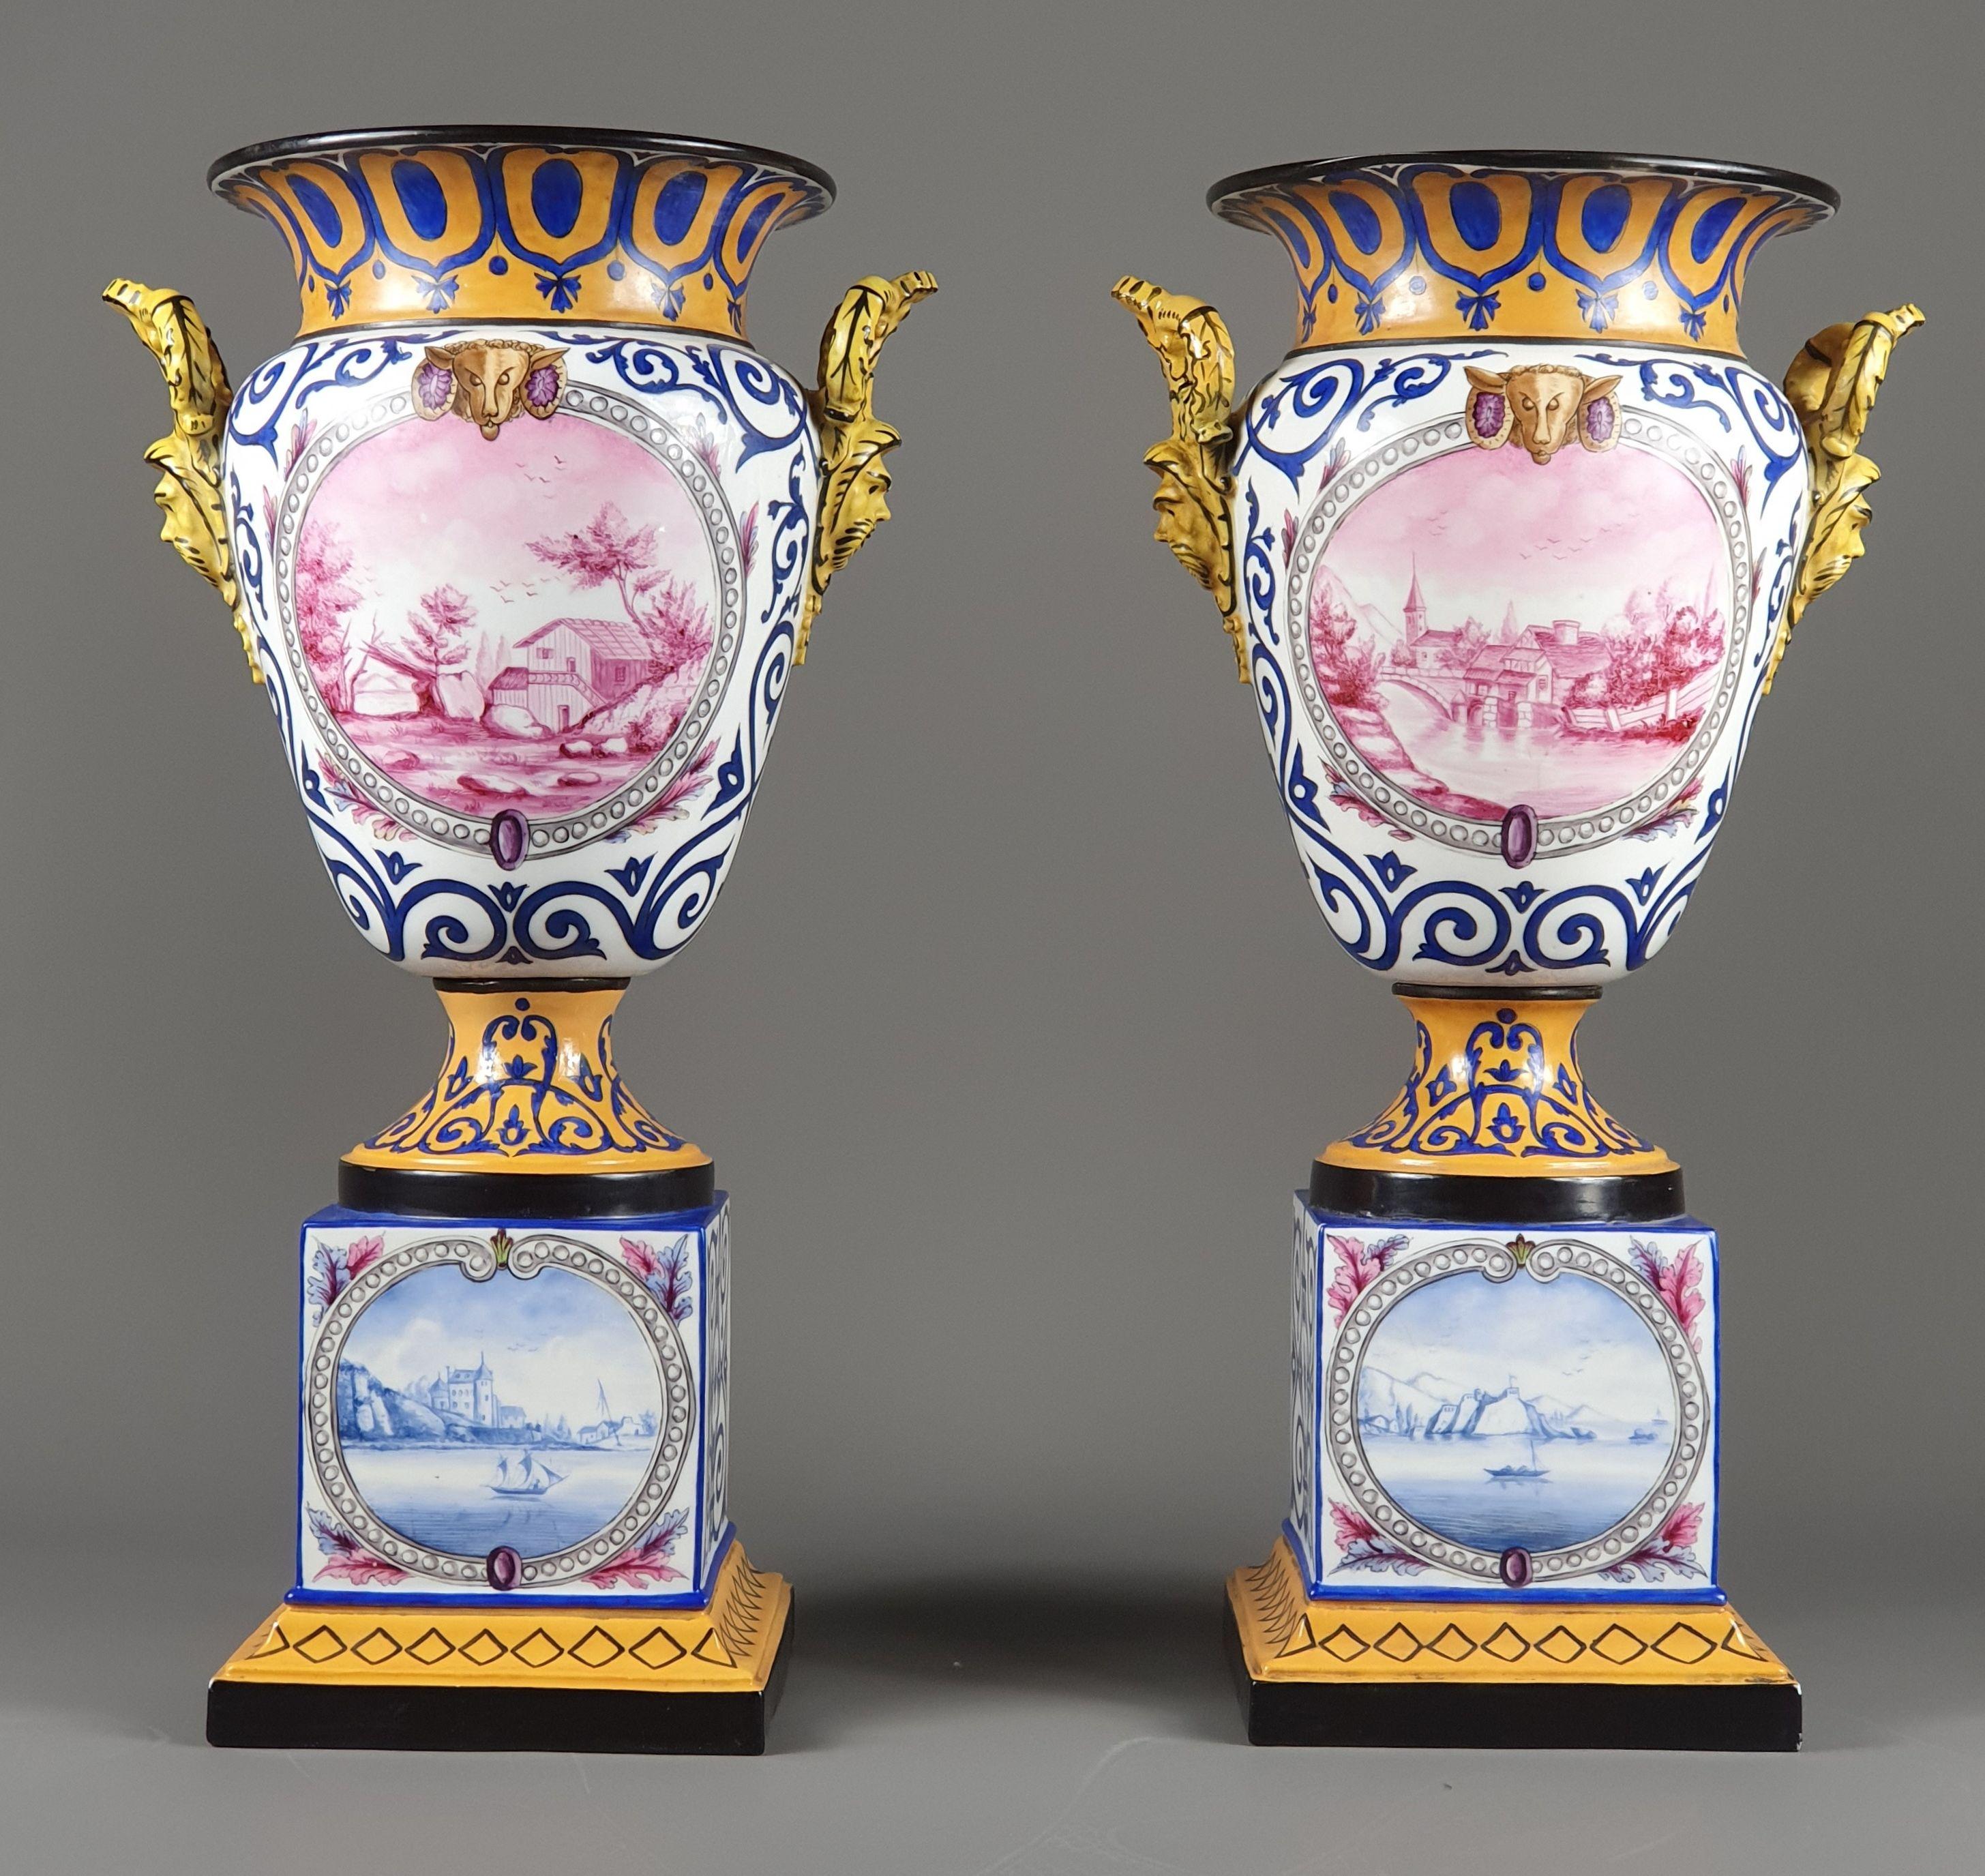 Seltenes Paar Vasen aus Pariser Porzellan, bestehend aus einem kubischen Sockel auf einem ausgestellten Sockel und einer Vase im Medici-Stil mit einem großzügigen Bauch.

Prächtiges Dekor auf orangefarbenem und weißem Hintergrund mit marineblauem